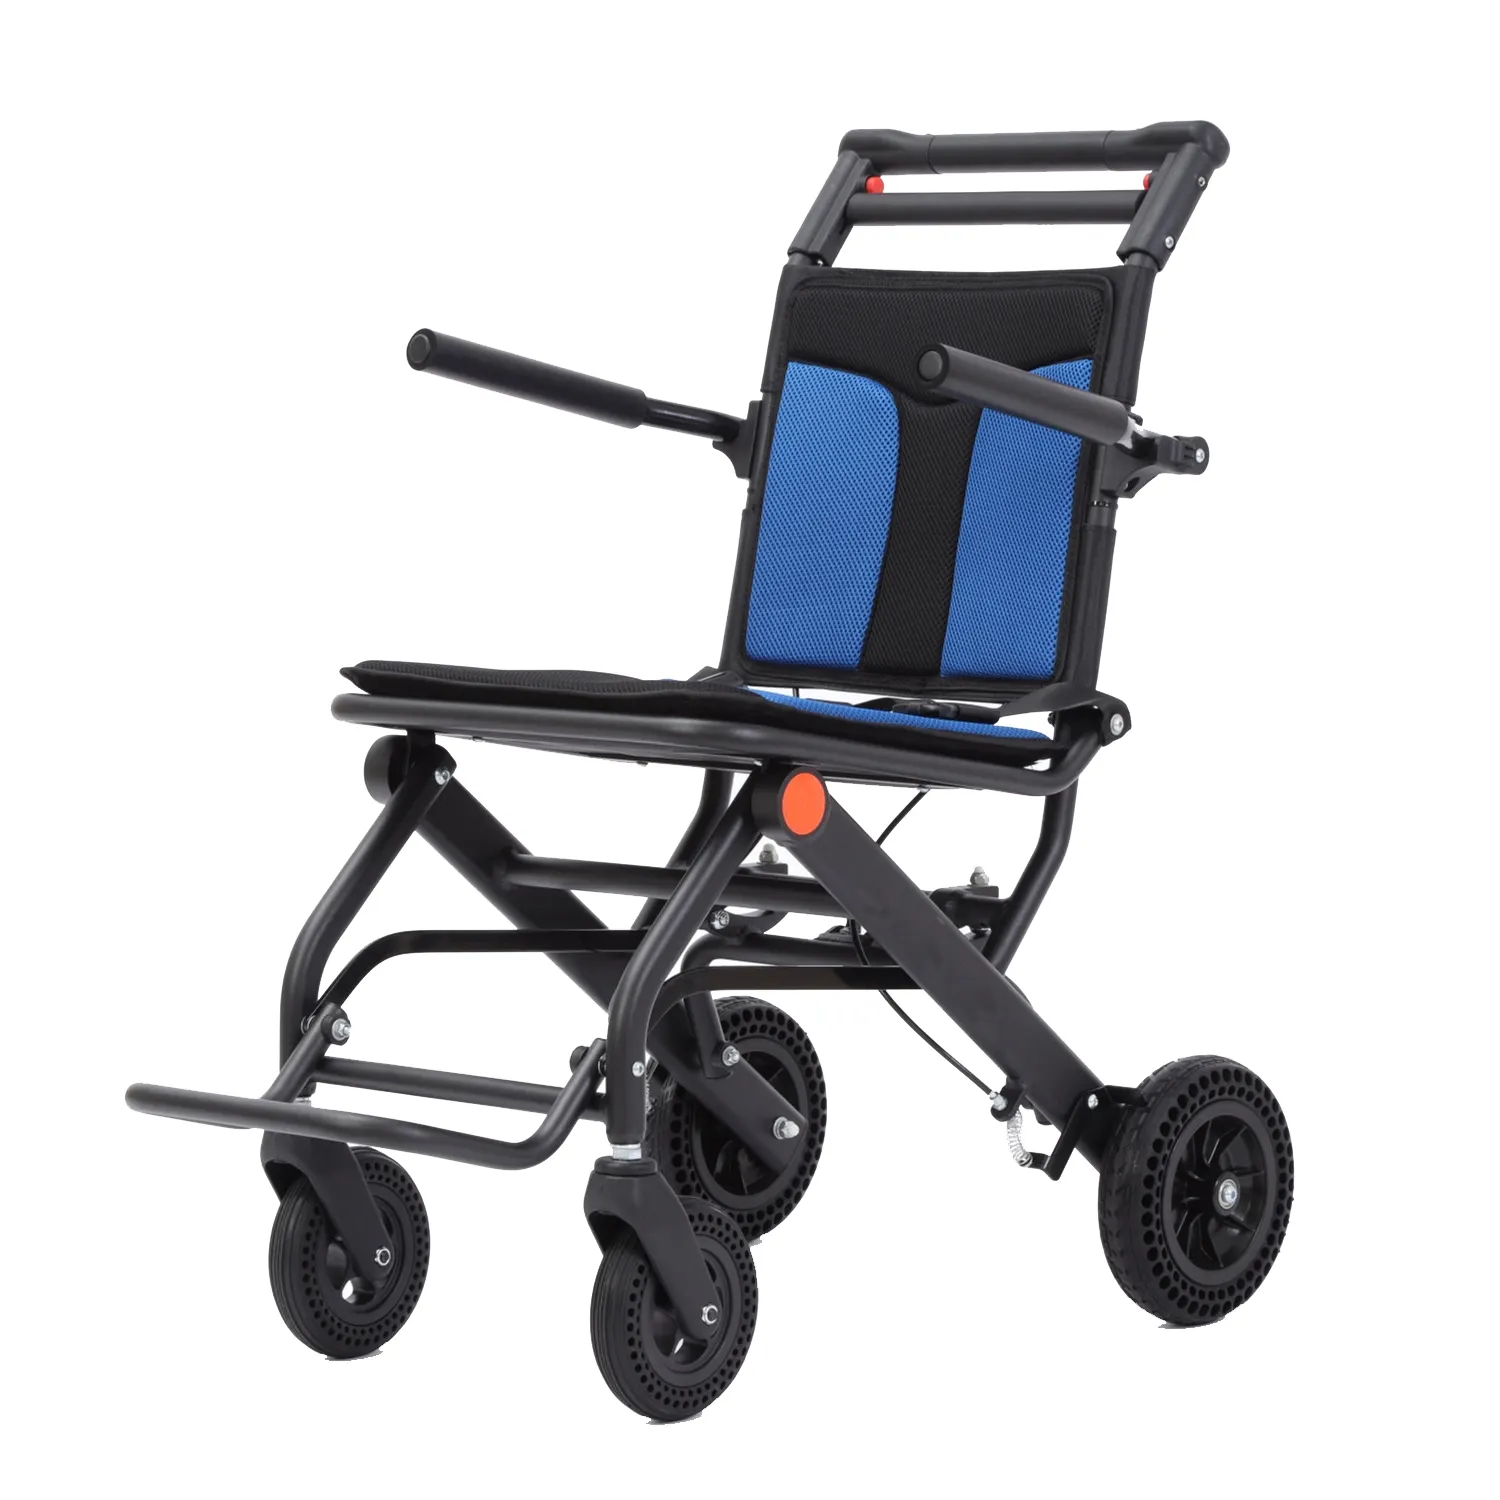 Penjualan langsung dari pabrik kursi roda lipat Manual kualitas tinggi Ultra ringan